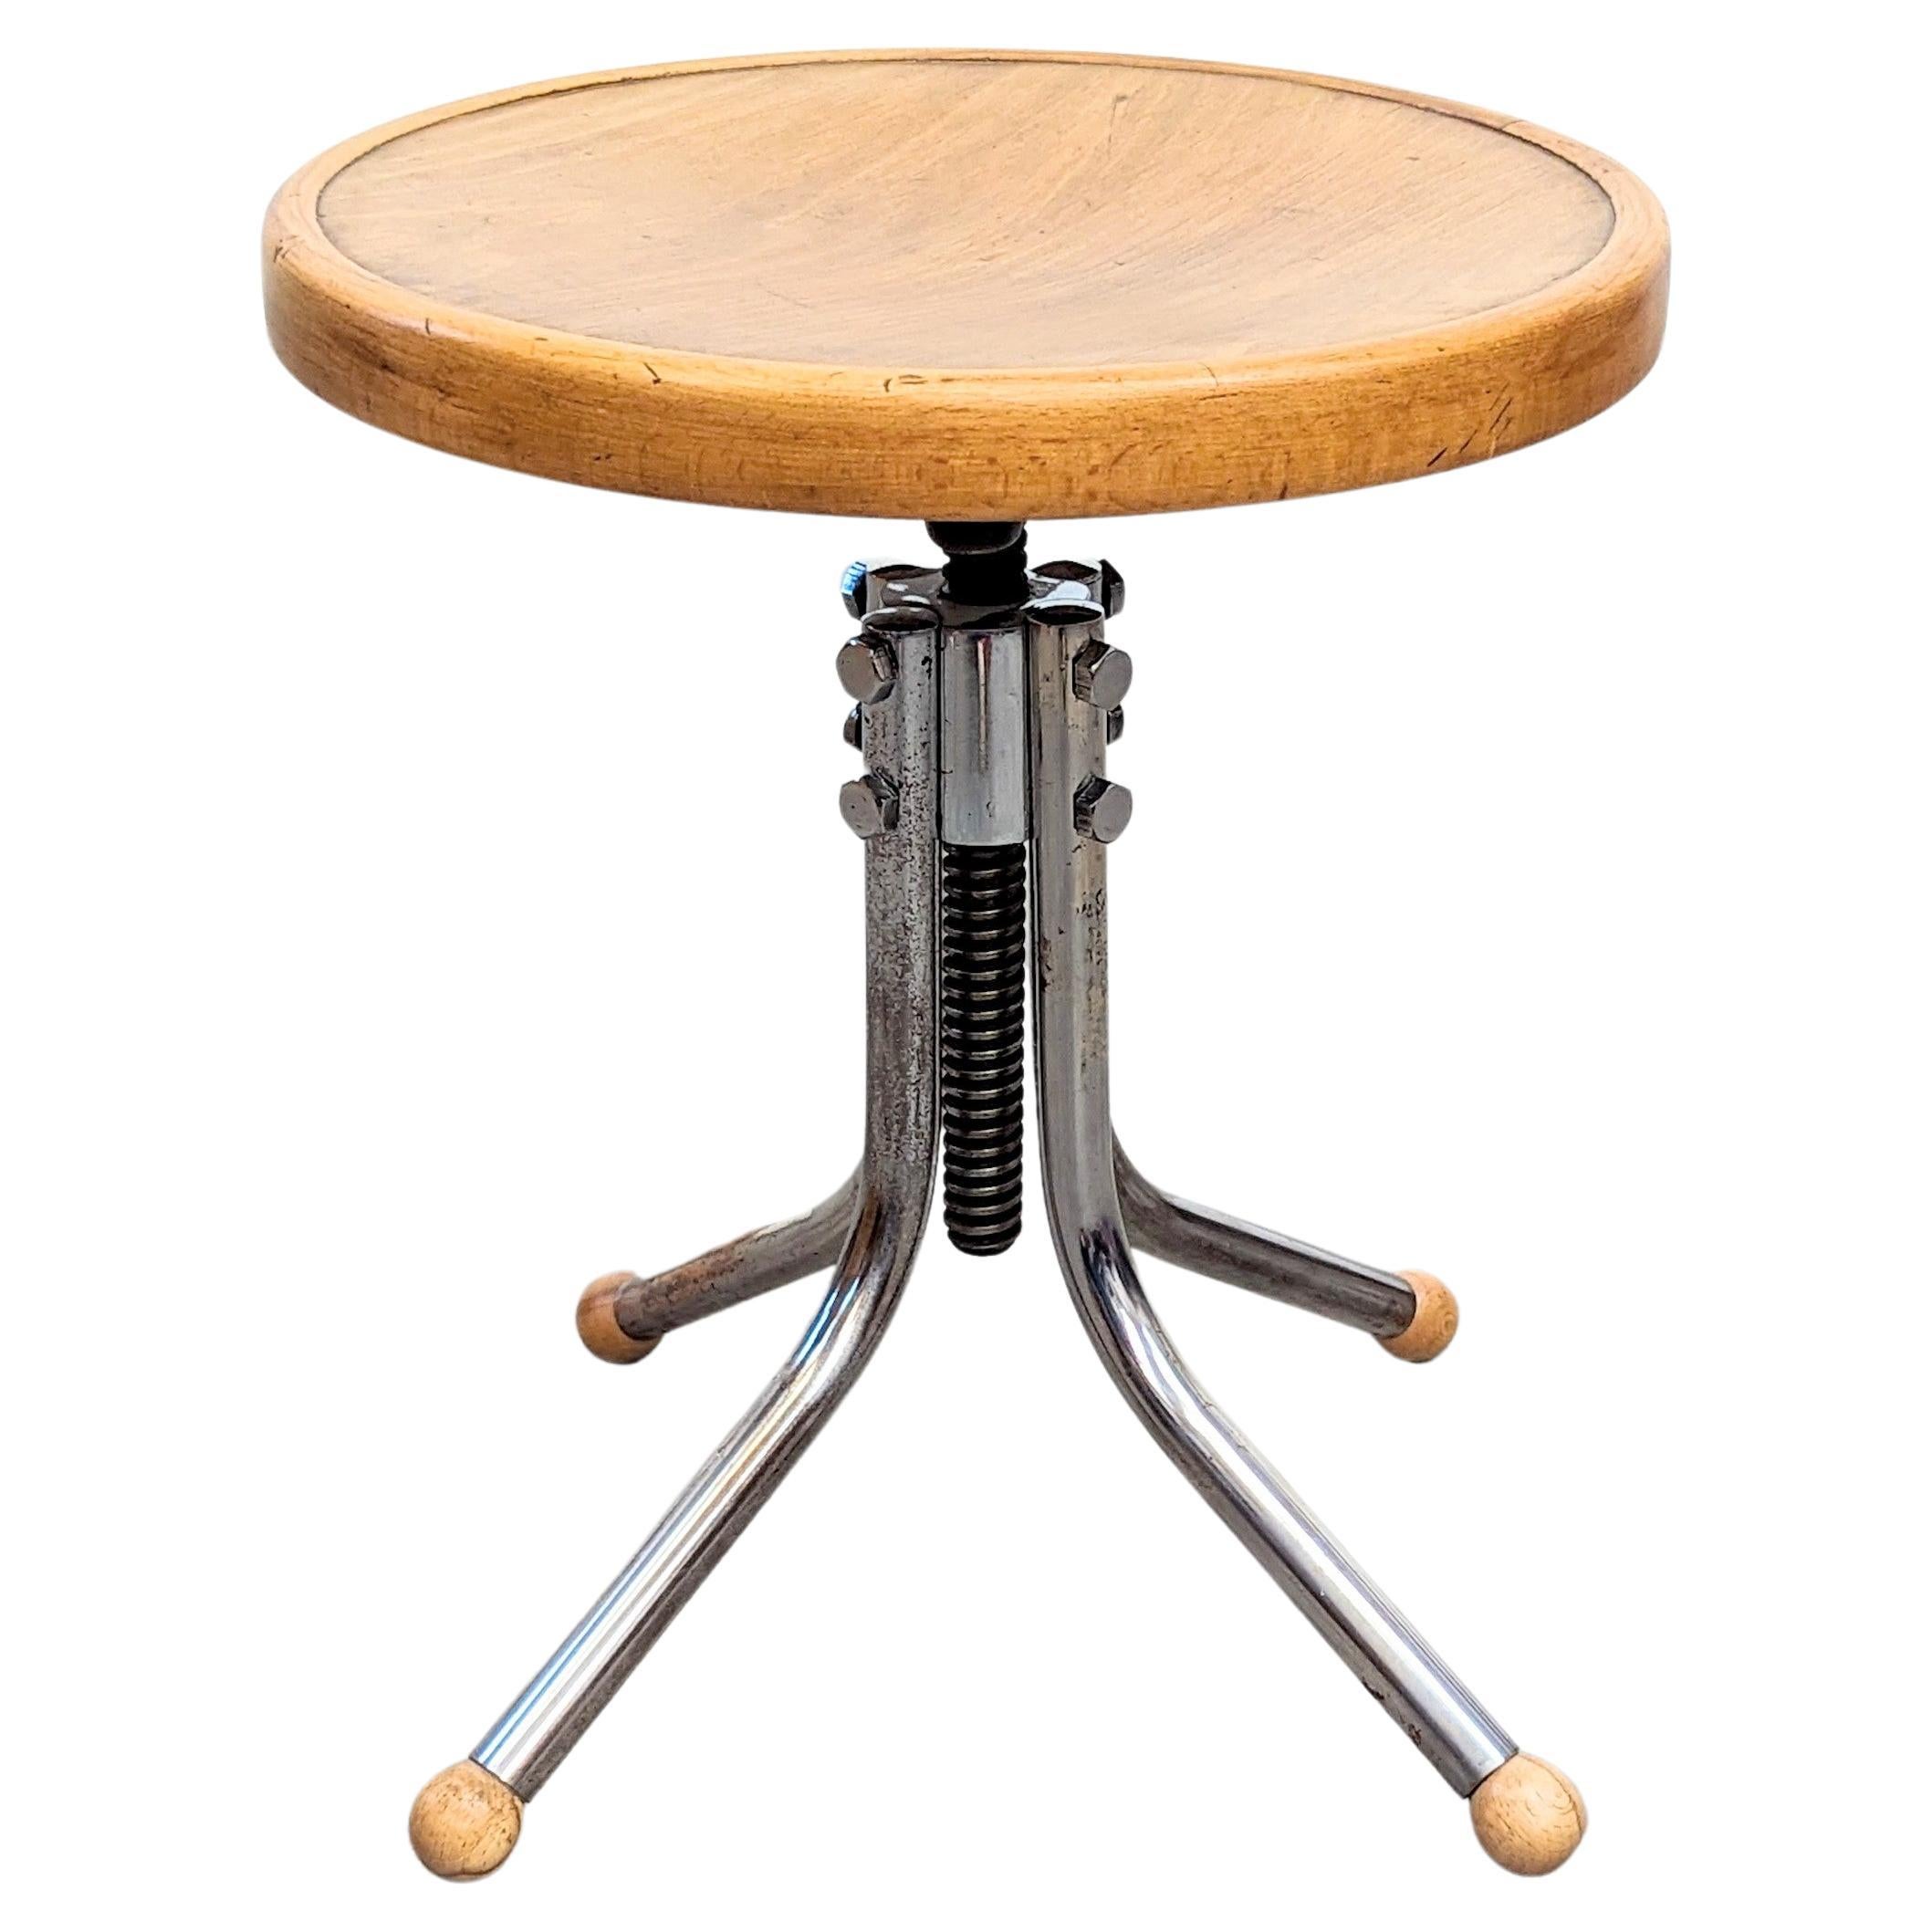 A rare variant of stool mod. no. B 195, designed by Marcel Breuer